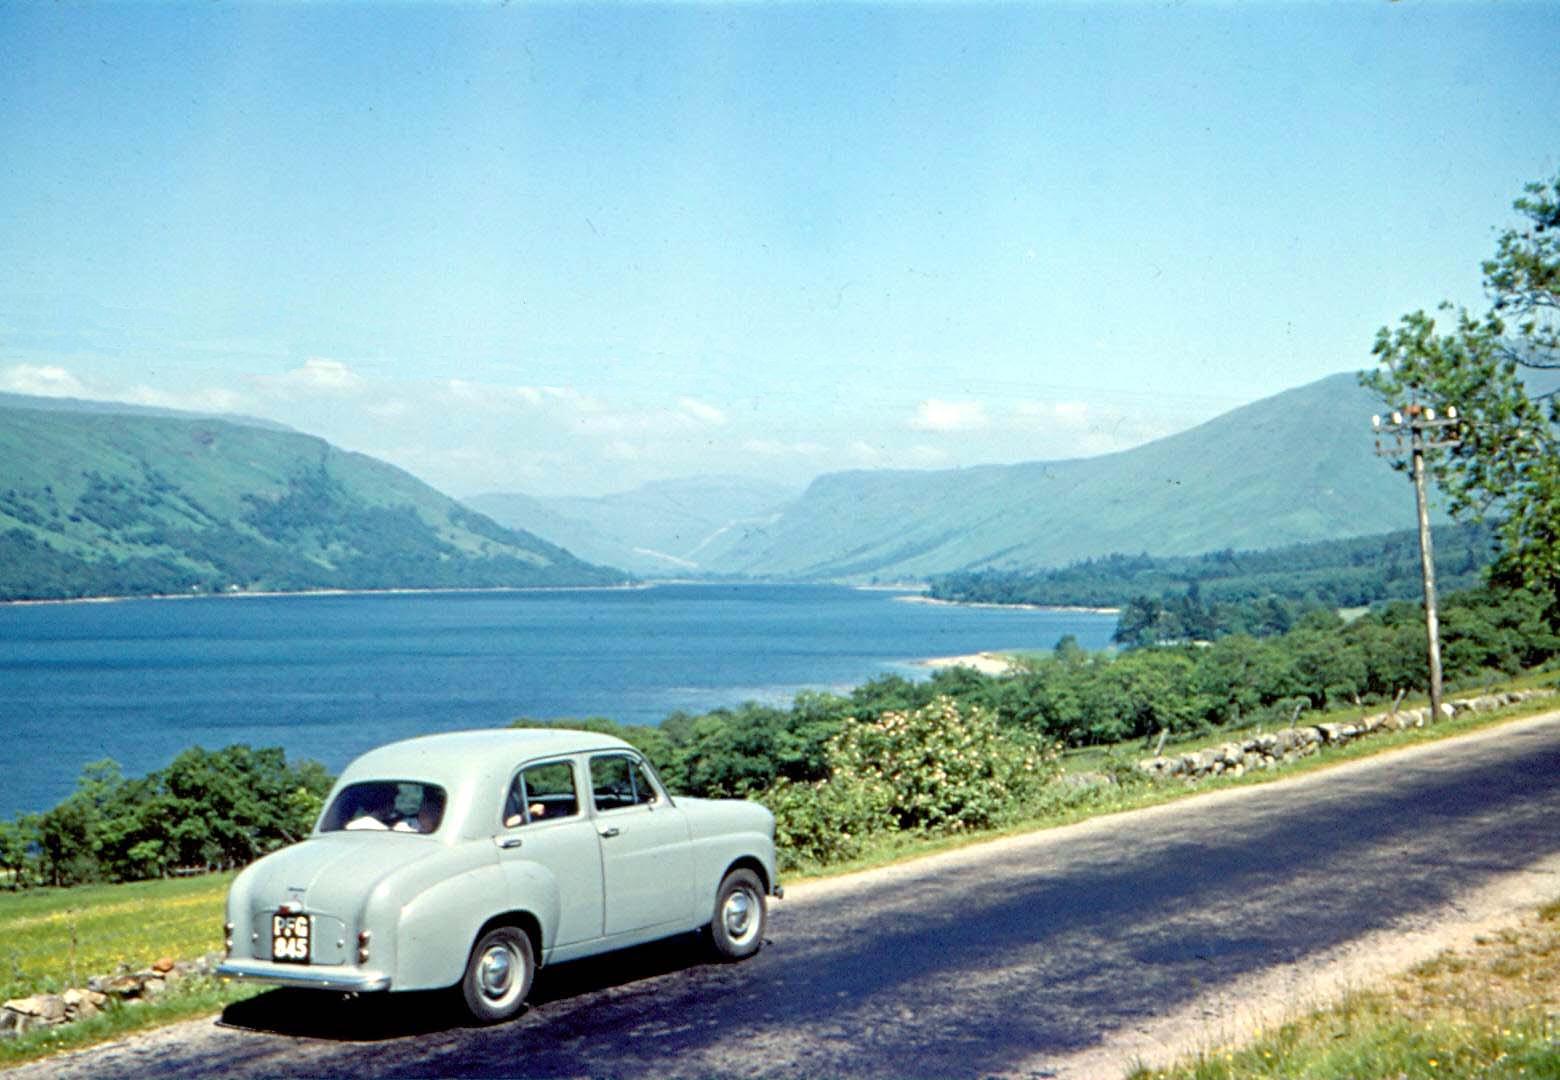 View of Loch Fyne